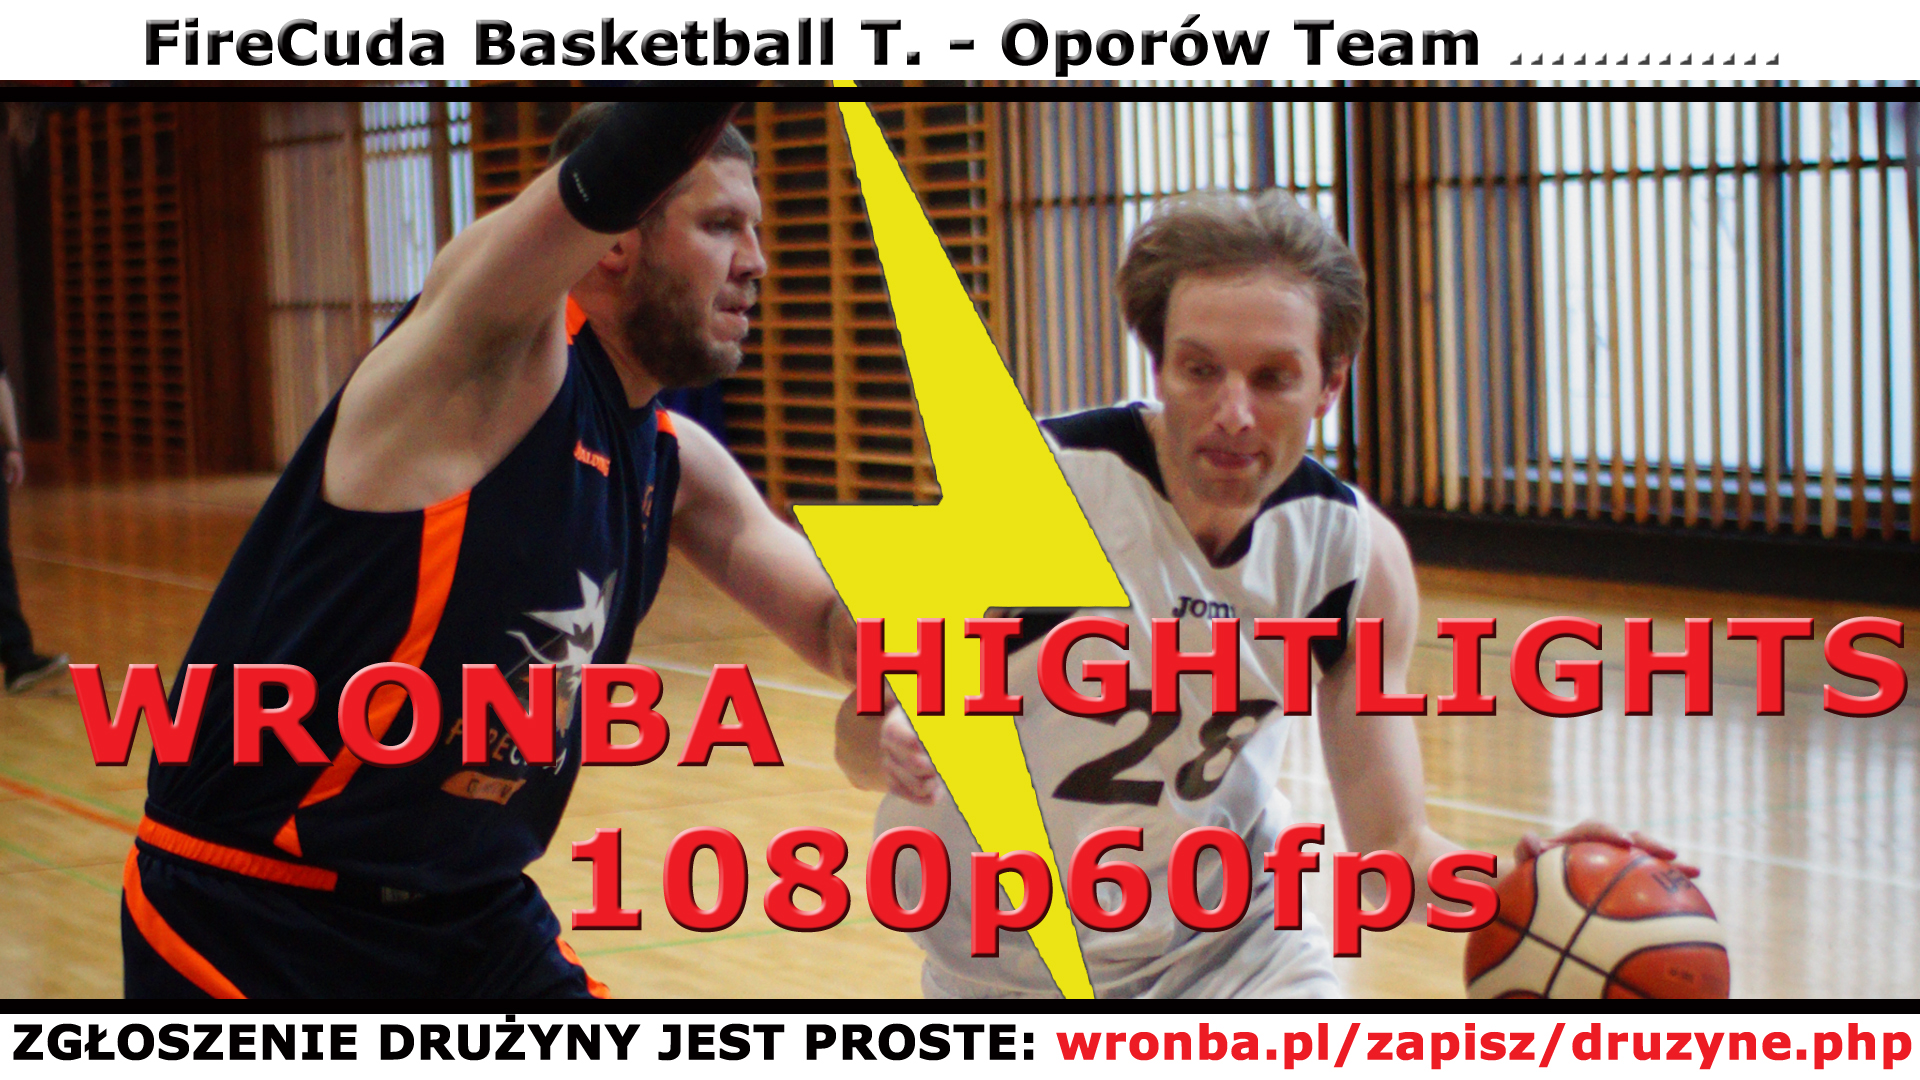 wronba.pl/uploads/wysiwyg/image/youtube_14516_mecz.jpg